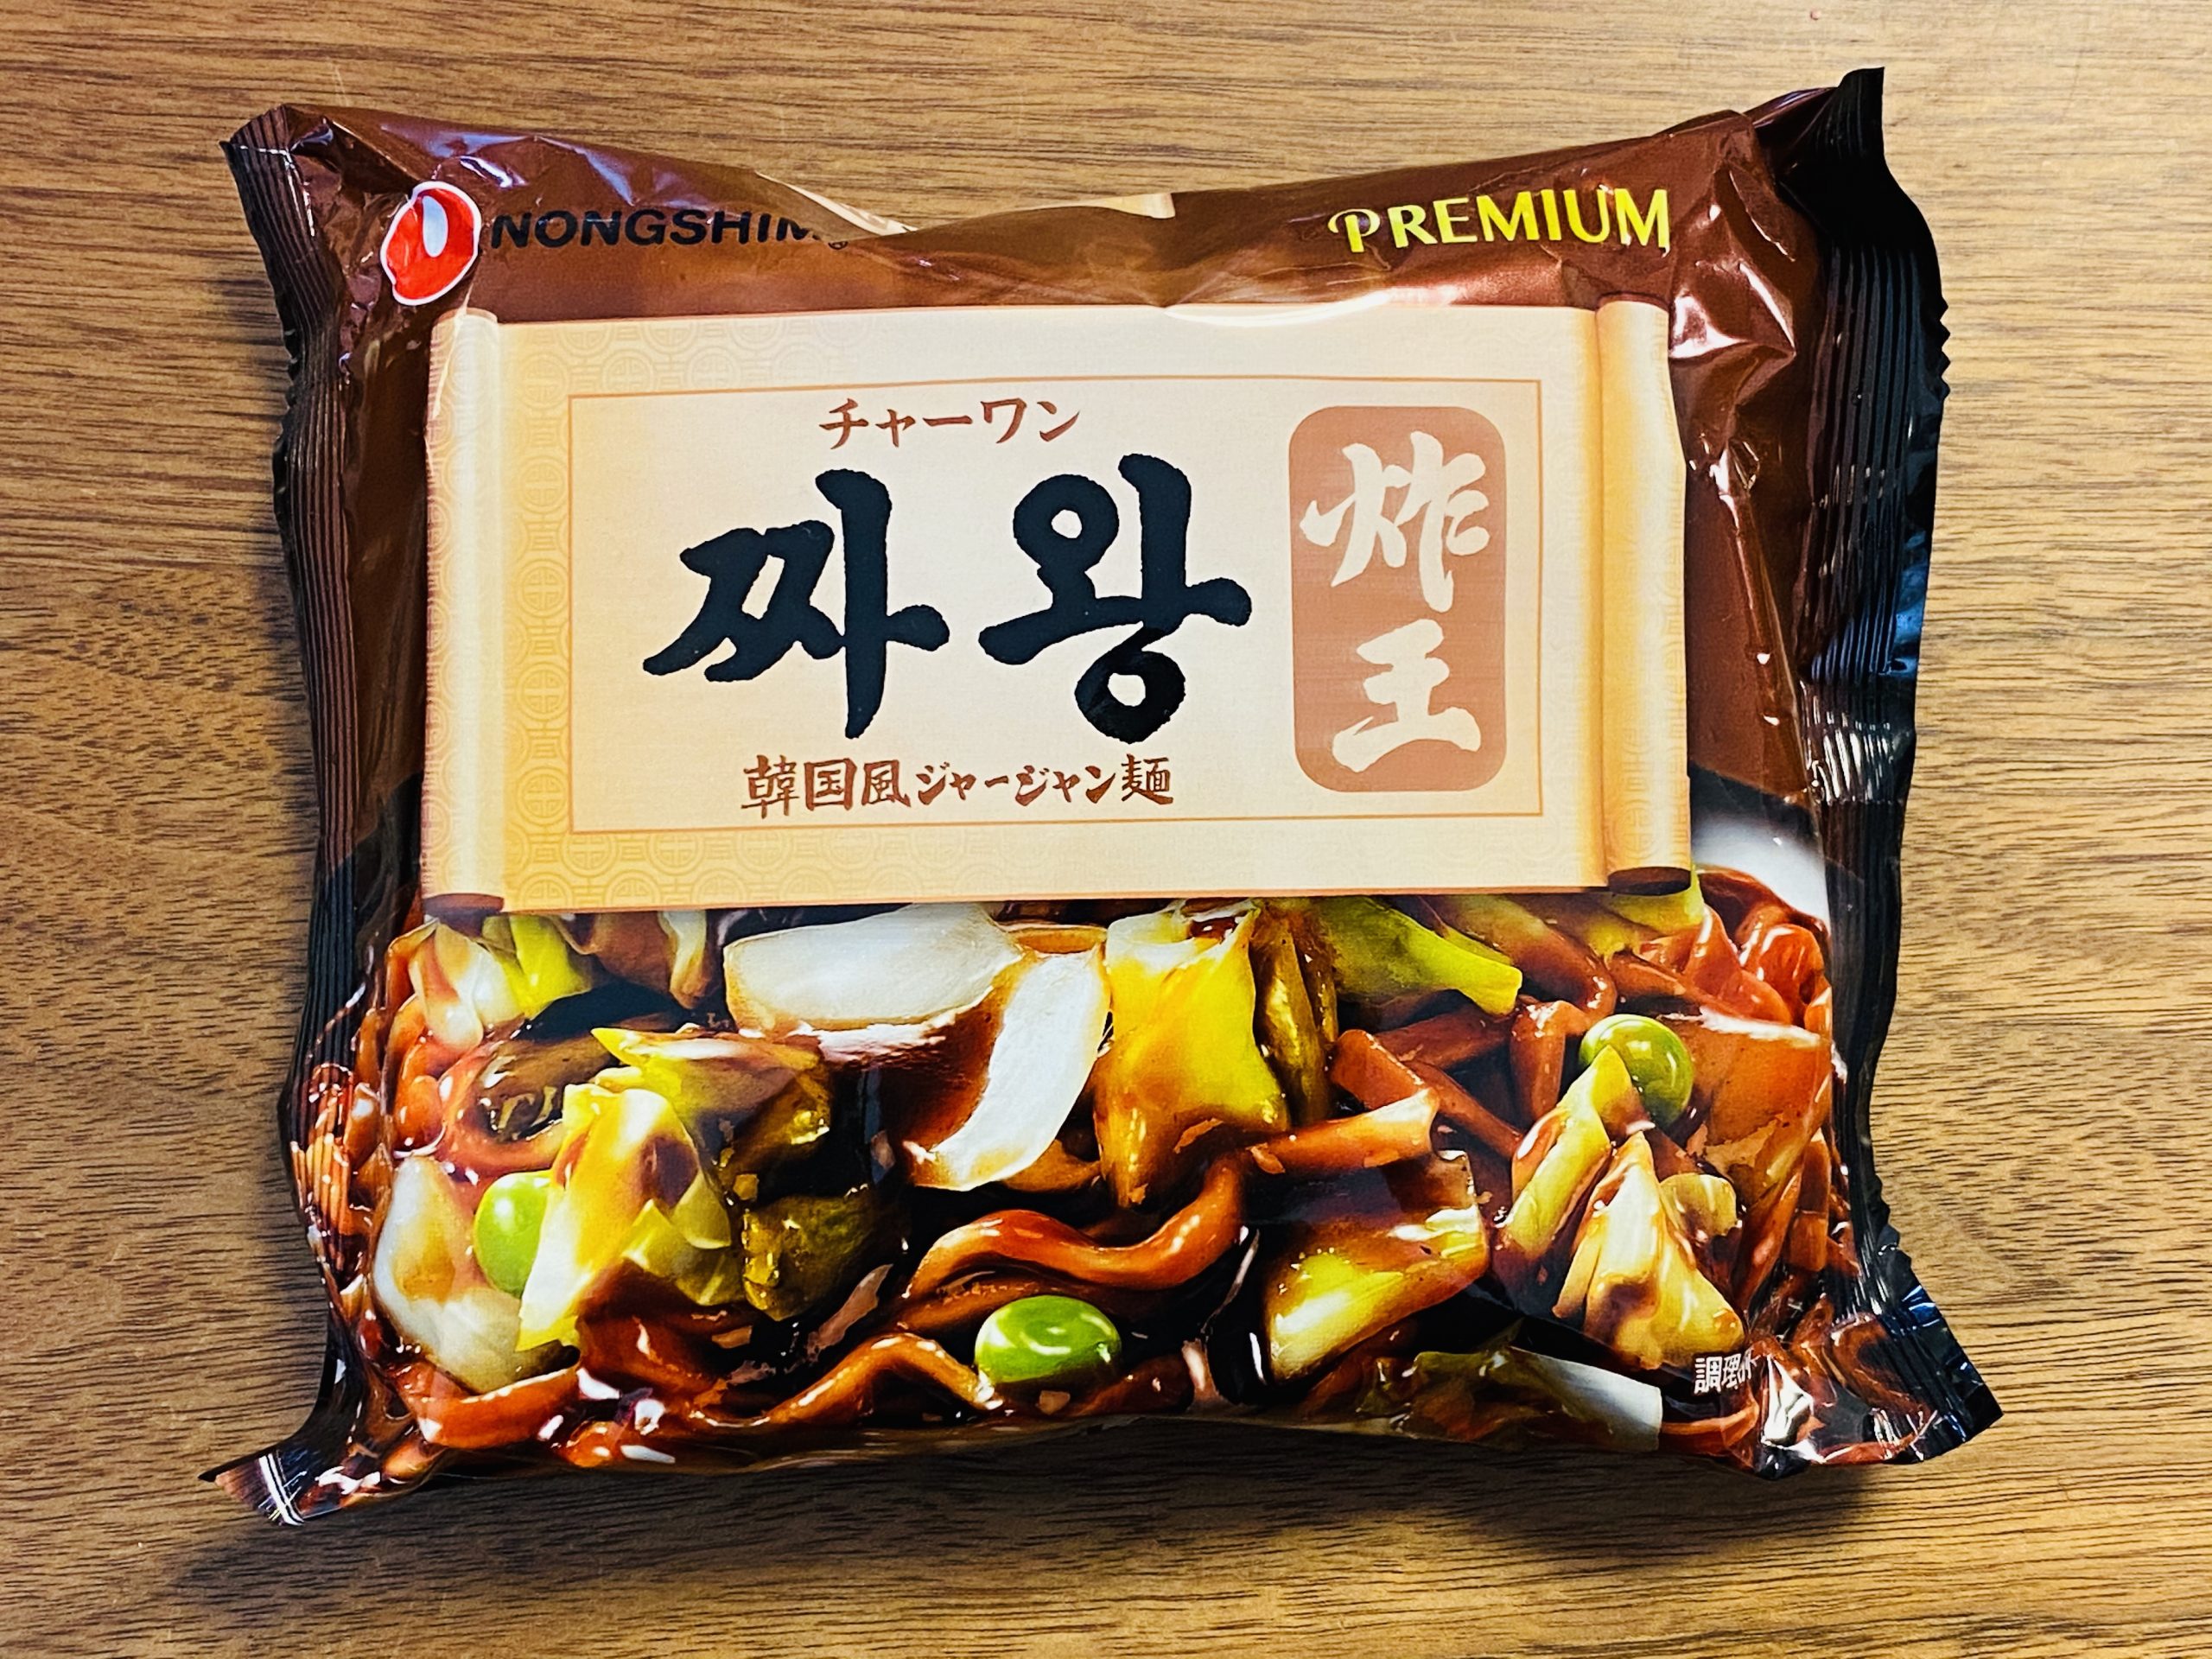 韓国のインスタントのジャージャー麺の作り方 チャーワン編 旅の行き方